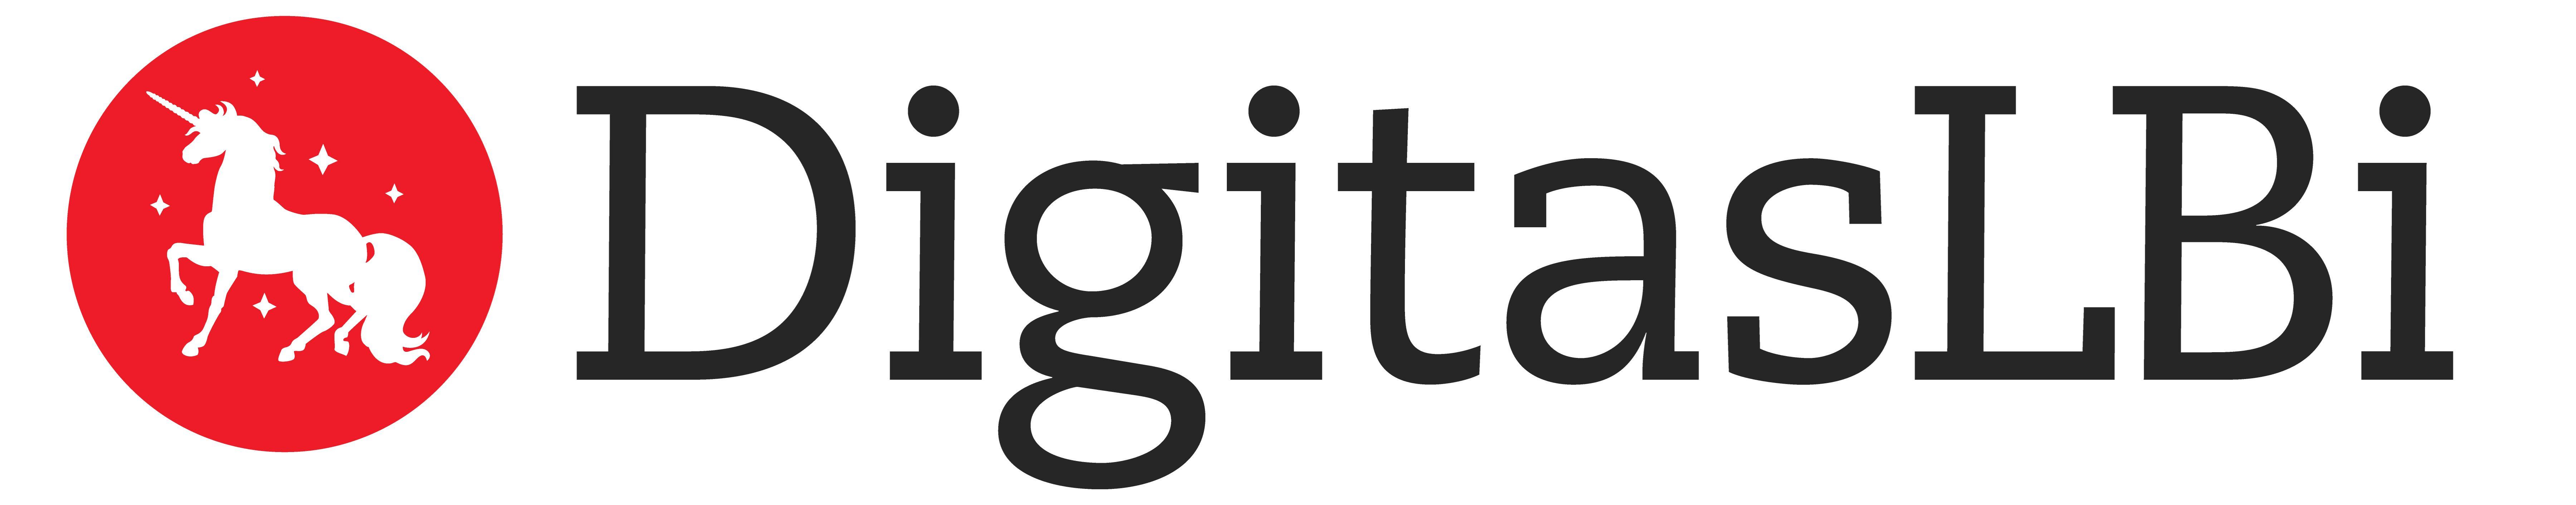 Digitas Logo - DigitasLBi new logo. Brands I like